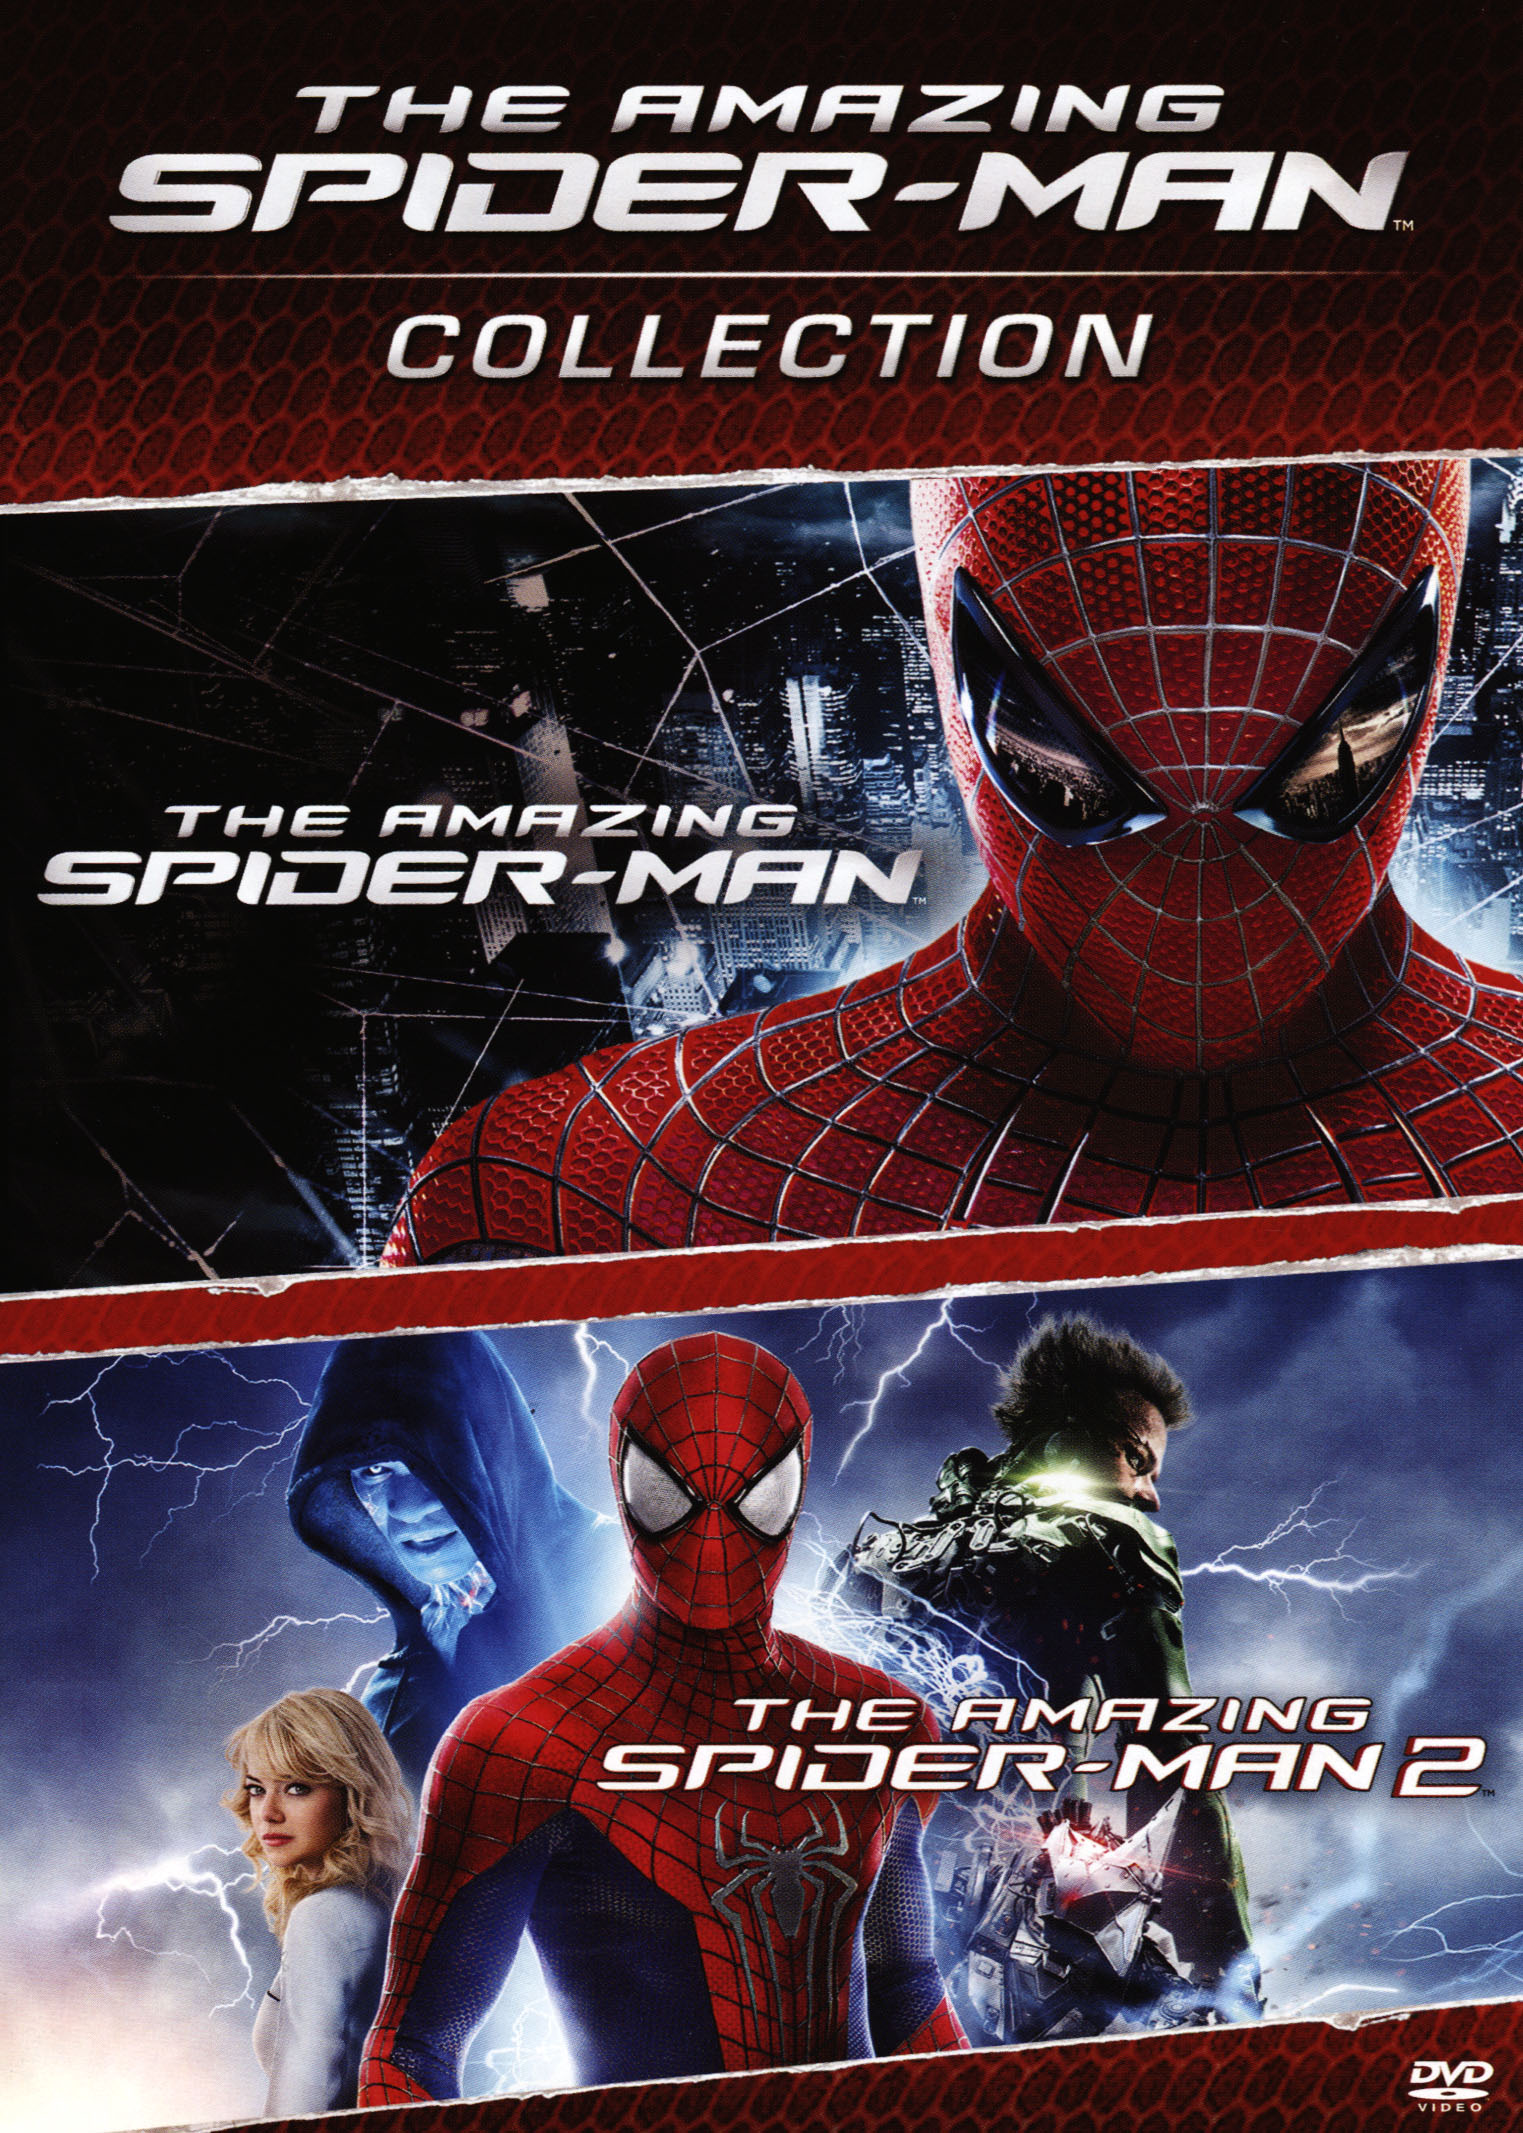 The Amazing Spider Man The Amazing Spider Man 2 2 Discs Dvd Best Buy